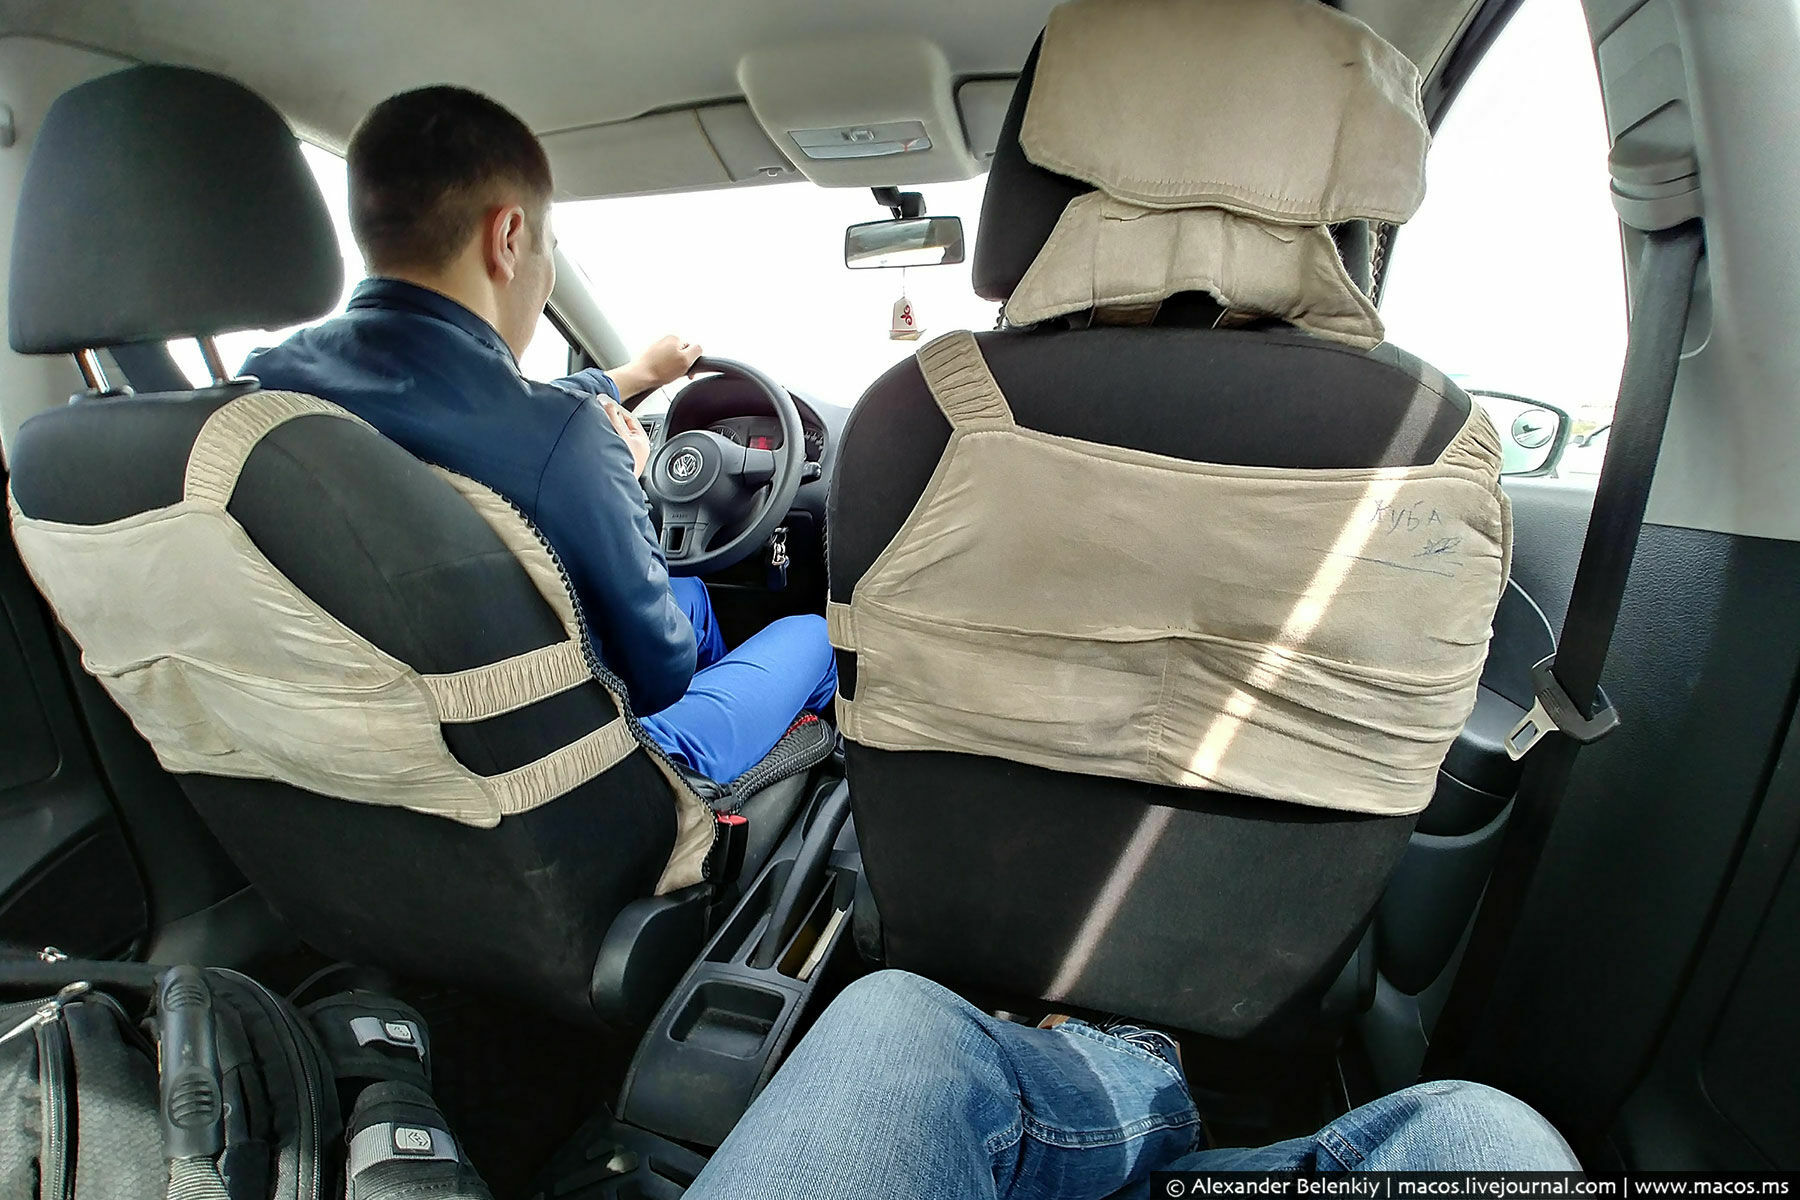 Киргизское такси в Москве "разводит" на деньги и безопасность